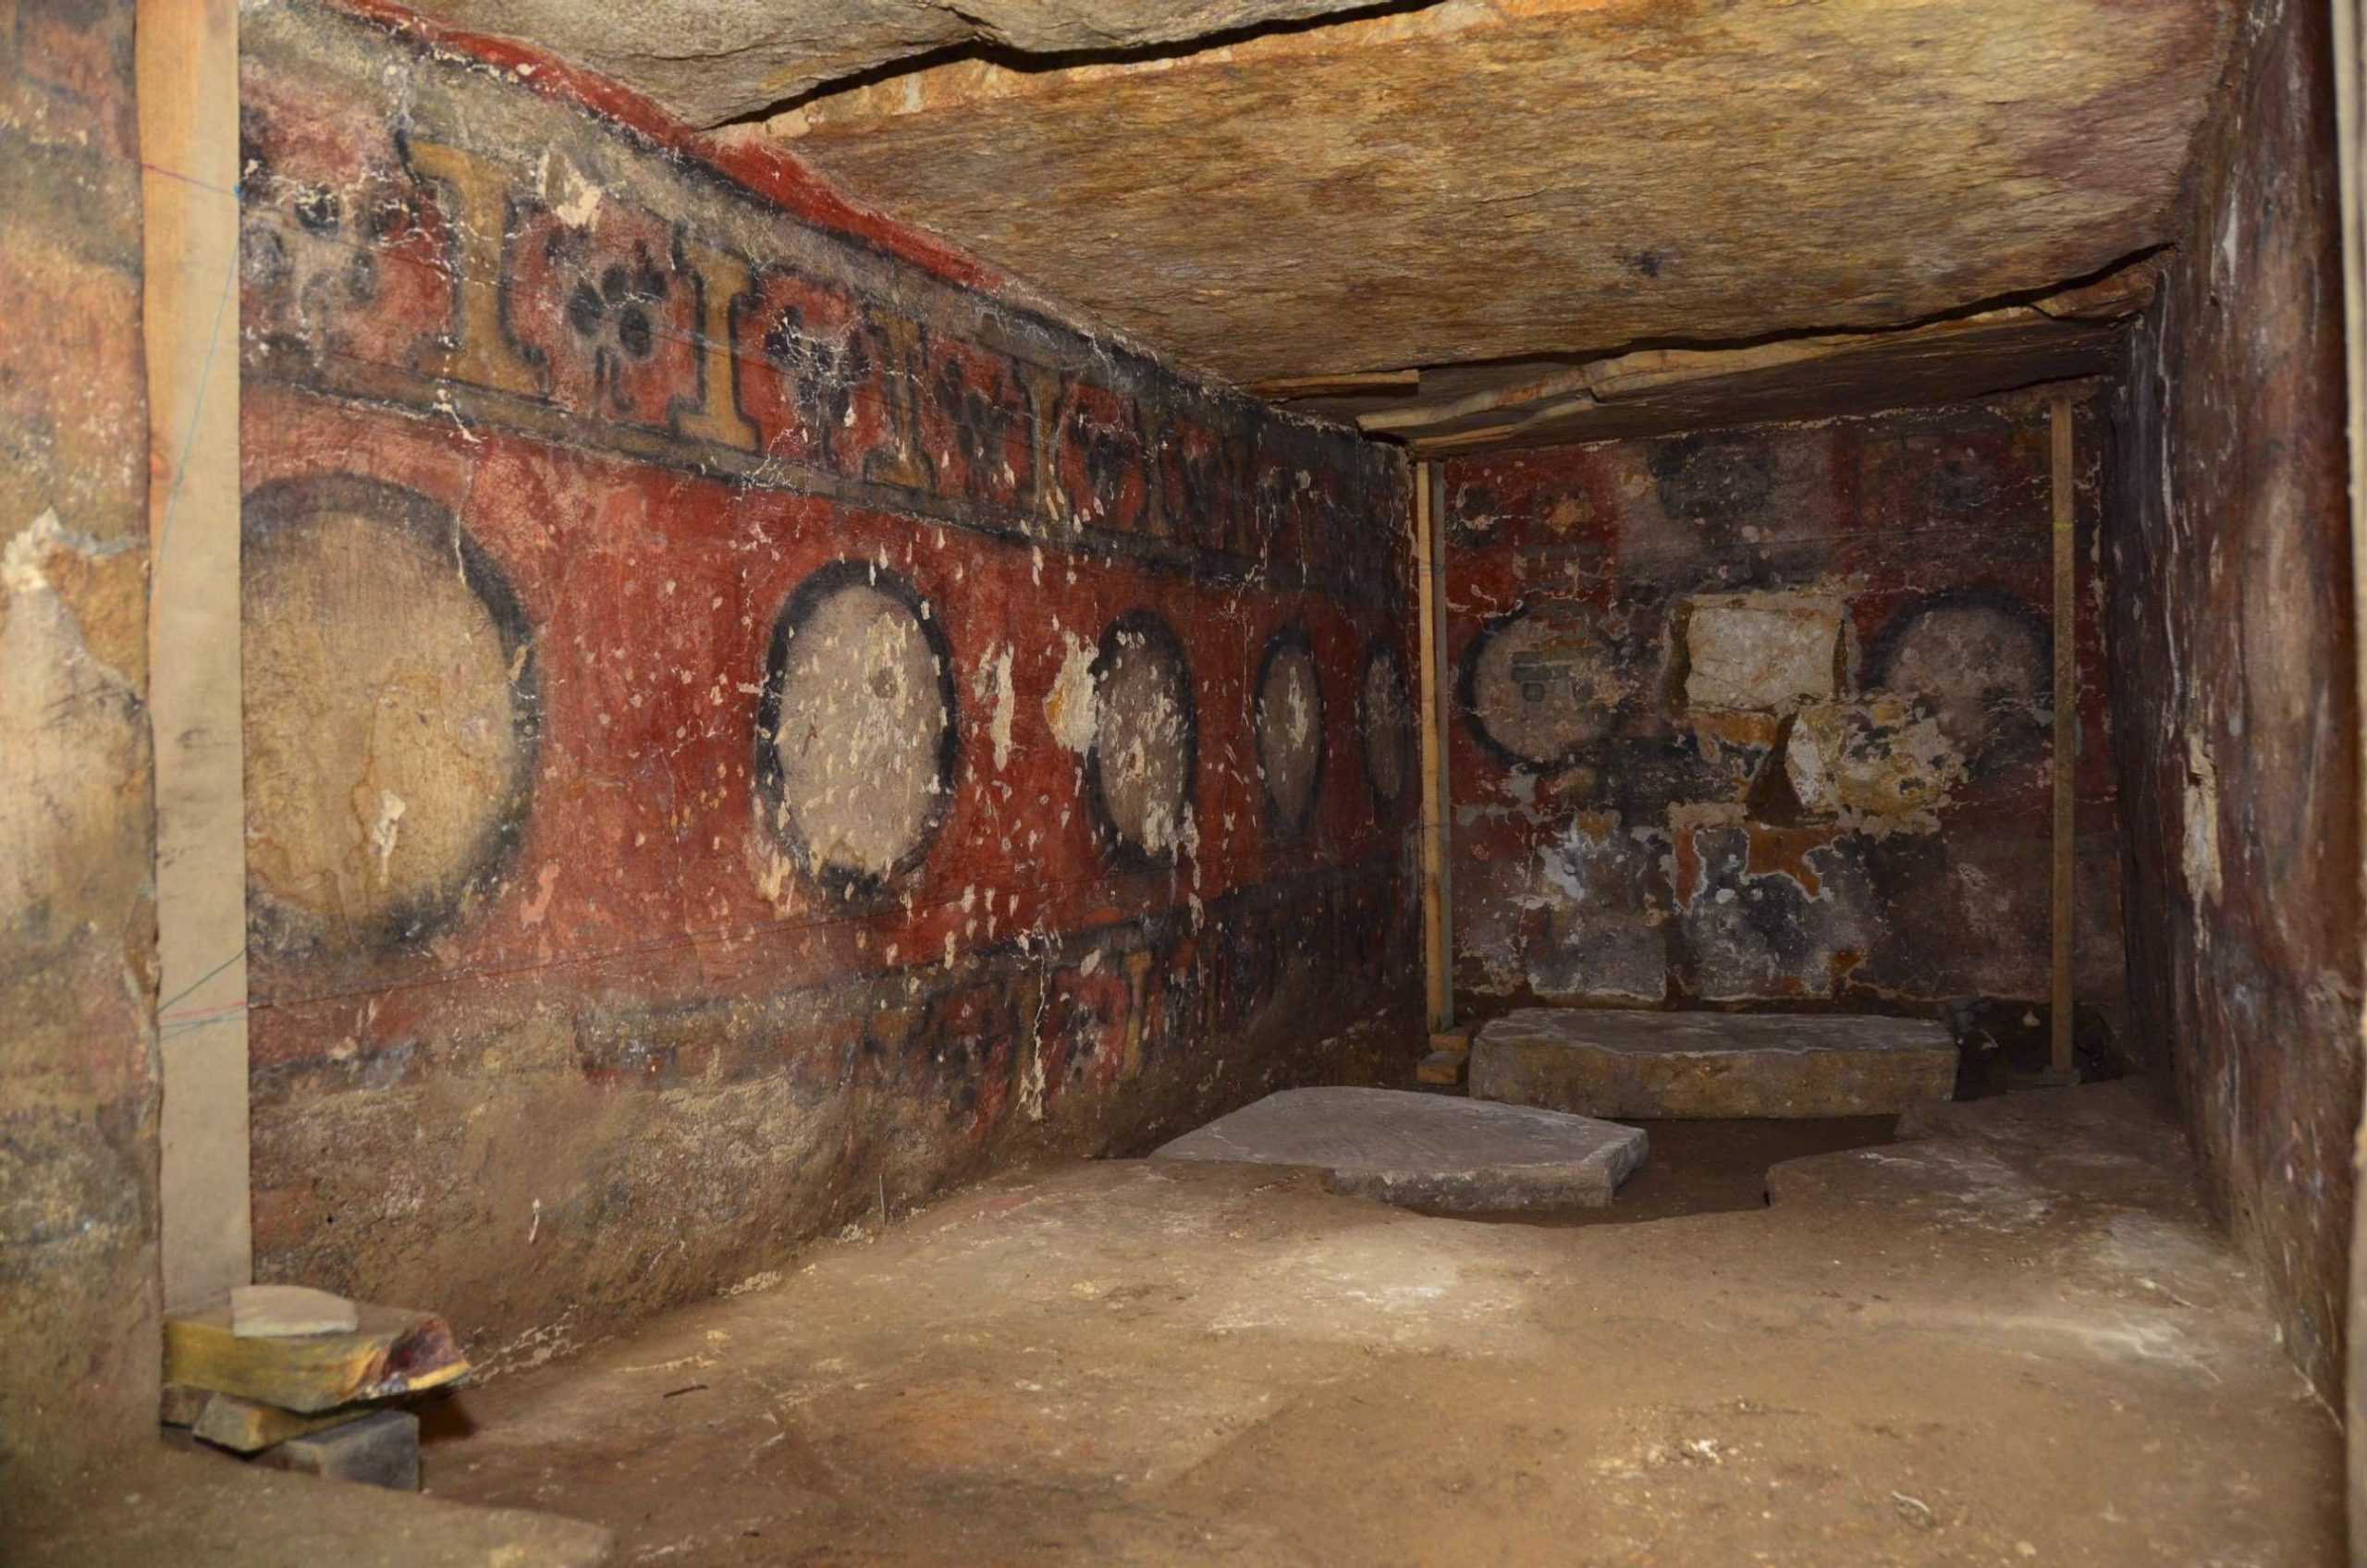 Hình ảnh đời sống, xã hội người Maya được khắc họa bên trong hầm mộ